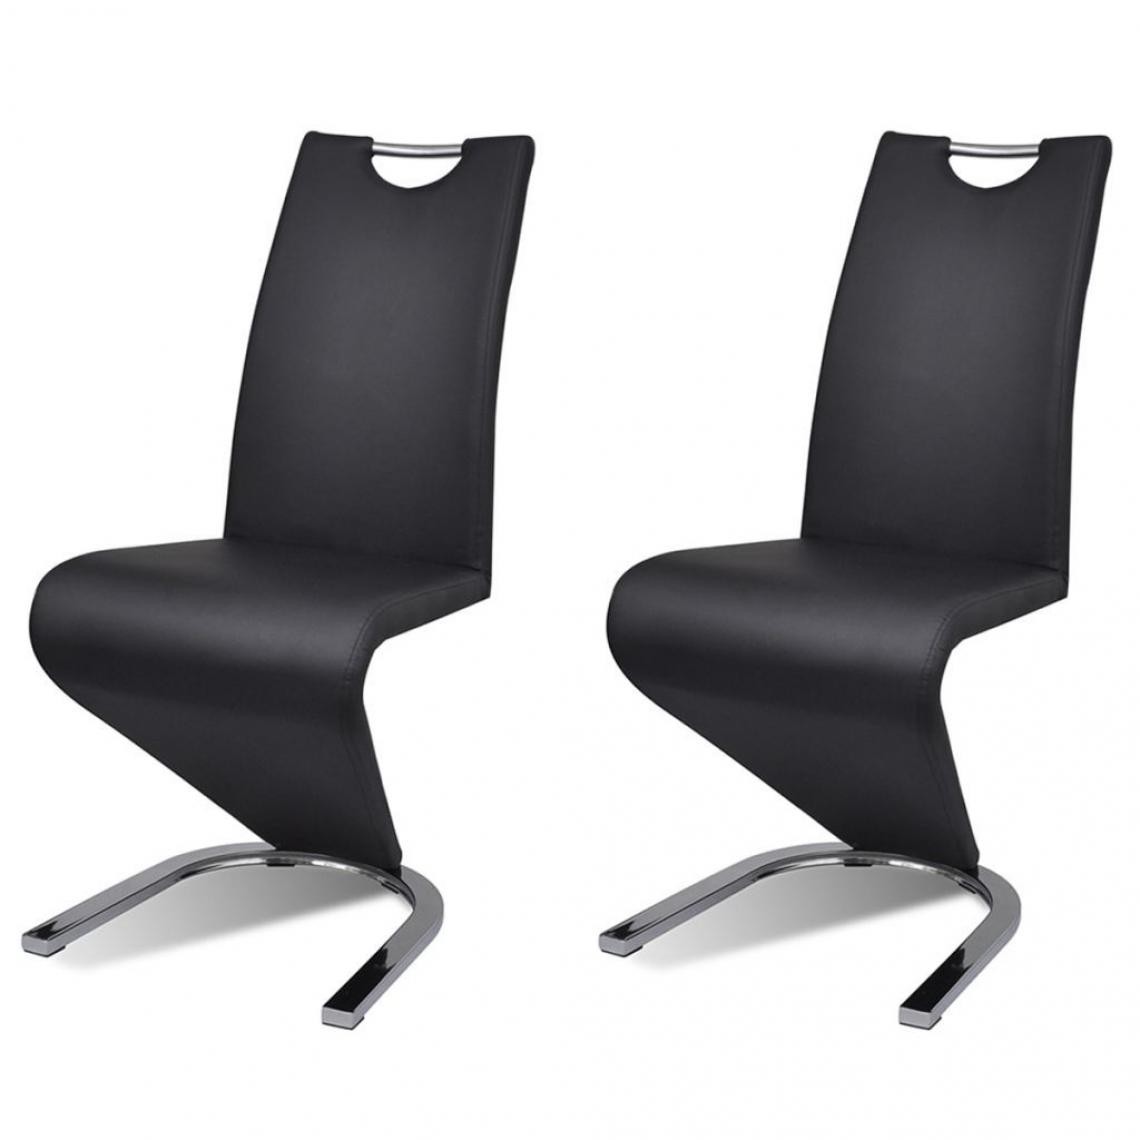 Decoshop26 - Lot de 2 chaises de salle à manger cuisine design contemporain similicuir noir CDS020817 - Chaises